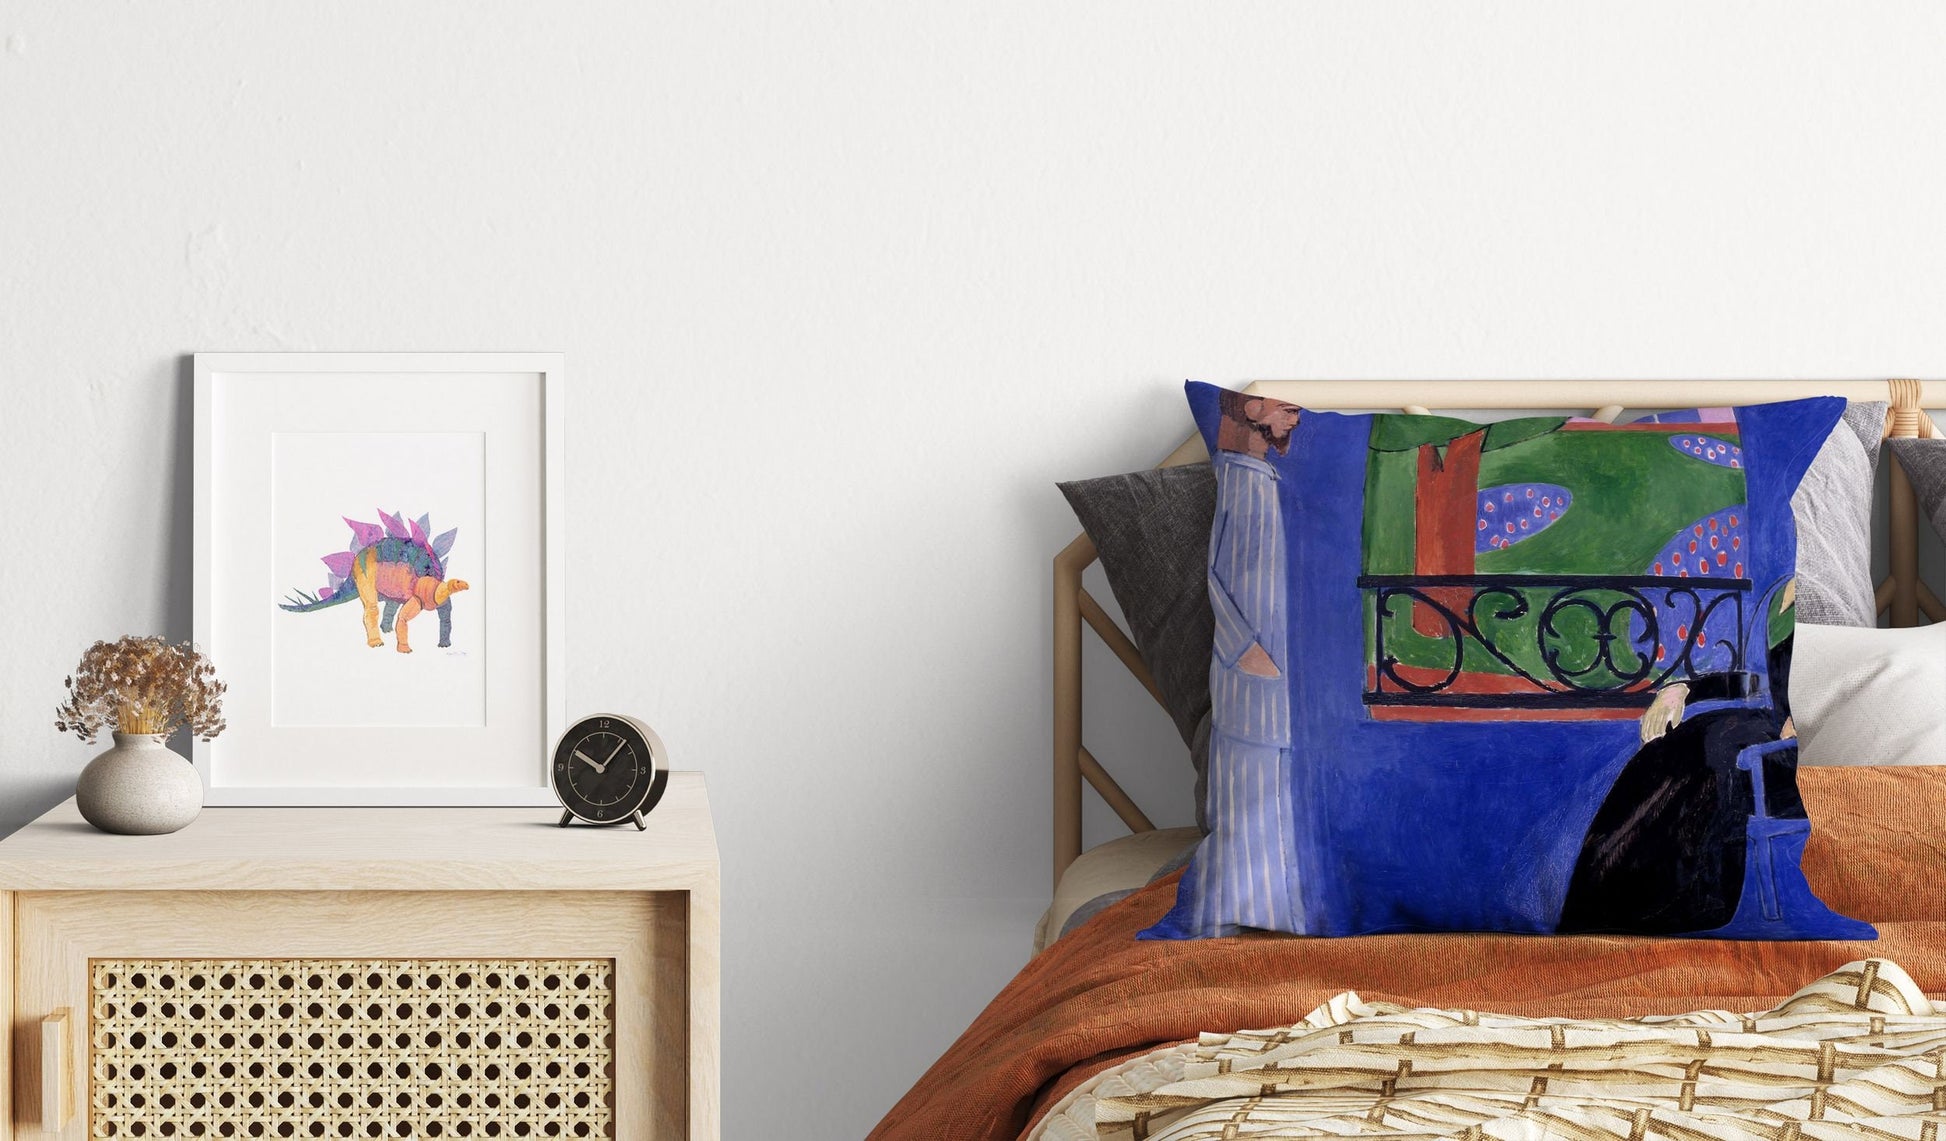 Henri Matisse Famous Art, Pillow Case, Abstract Throw Pillow Cover, Artist Pillow, Colorful Pillow Case, Modern Pillow, Square Pillow